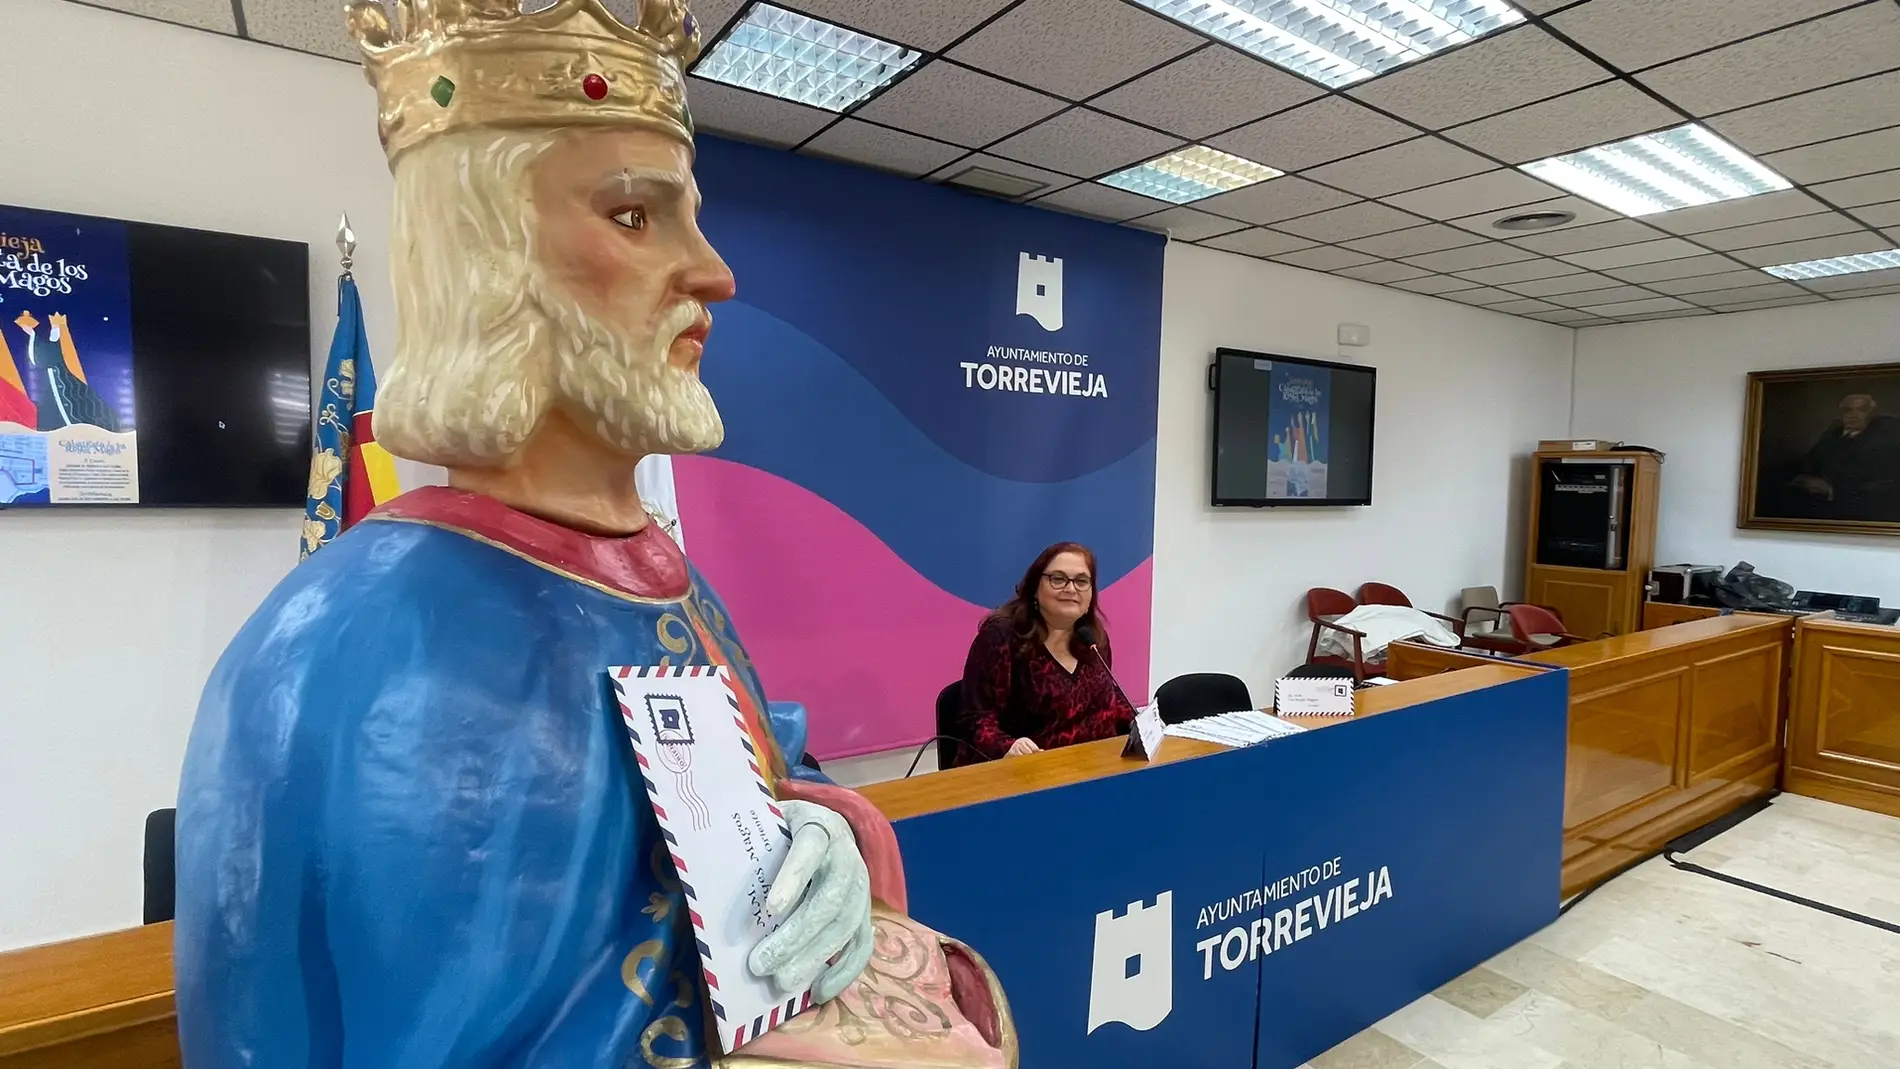 La cabalgata de reyes de Torrevieja tendrá grandes novedades en su desfile y en su séquito     